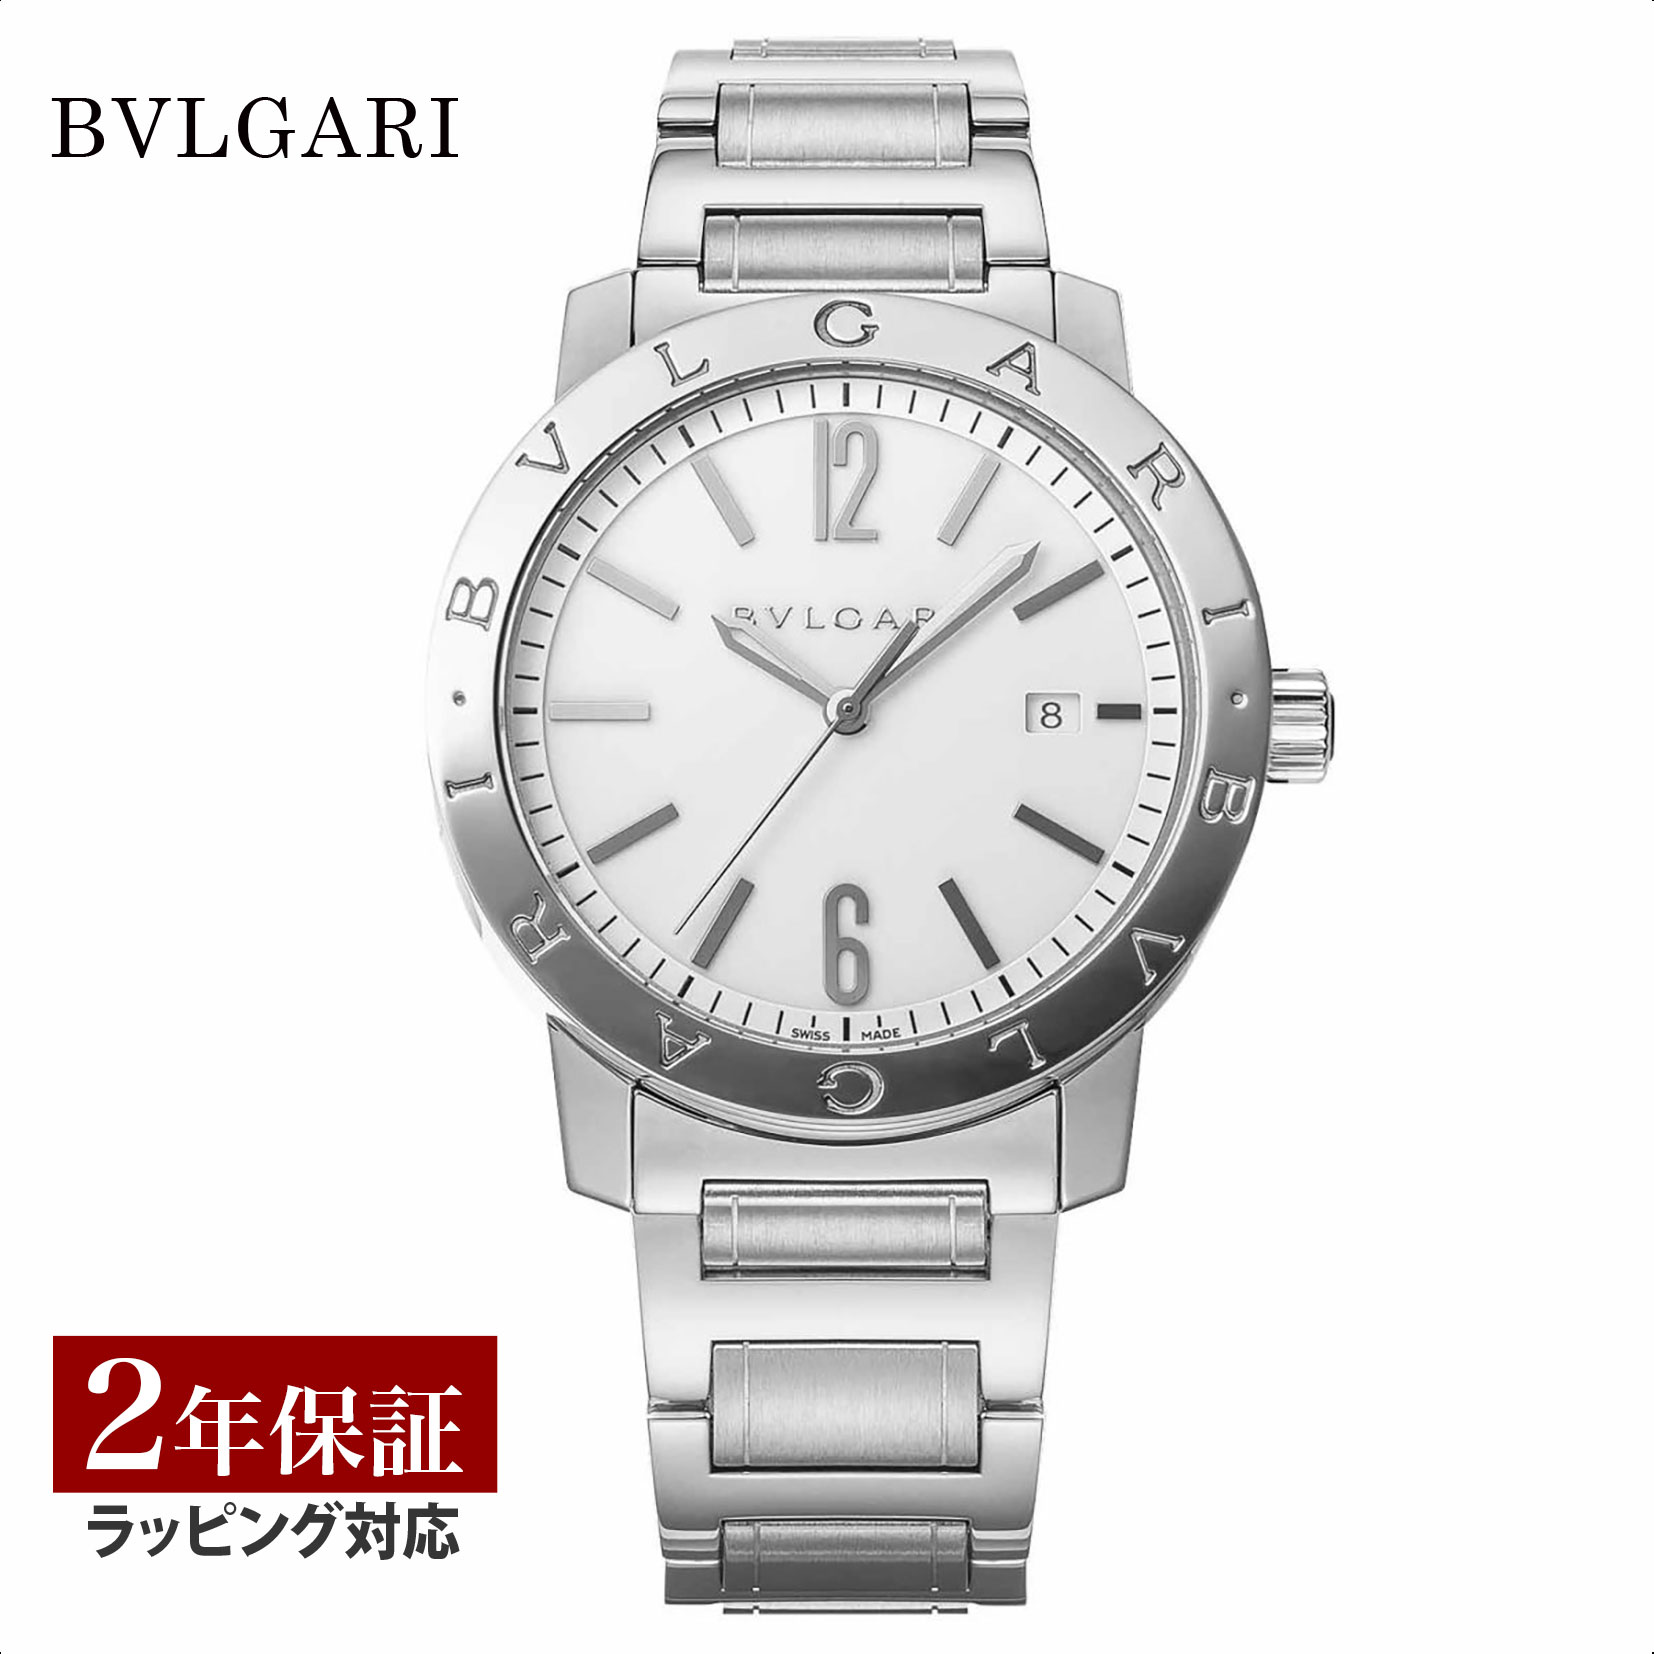 ブルガリブルガリ 腕時計（メンズ） ブルガリ BVLGARI メンズ 時計 Bvlgari Bvlgari ブルガリブルガリ 自動巻 ホワイト BB41WSSD 時計 腕時計 高級腕時計 ブランド 【ローン金利無料】